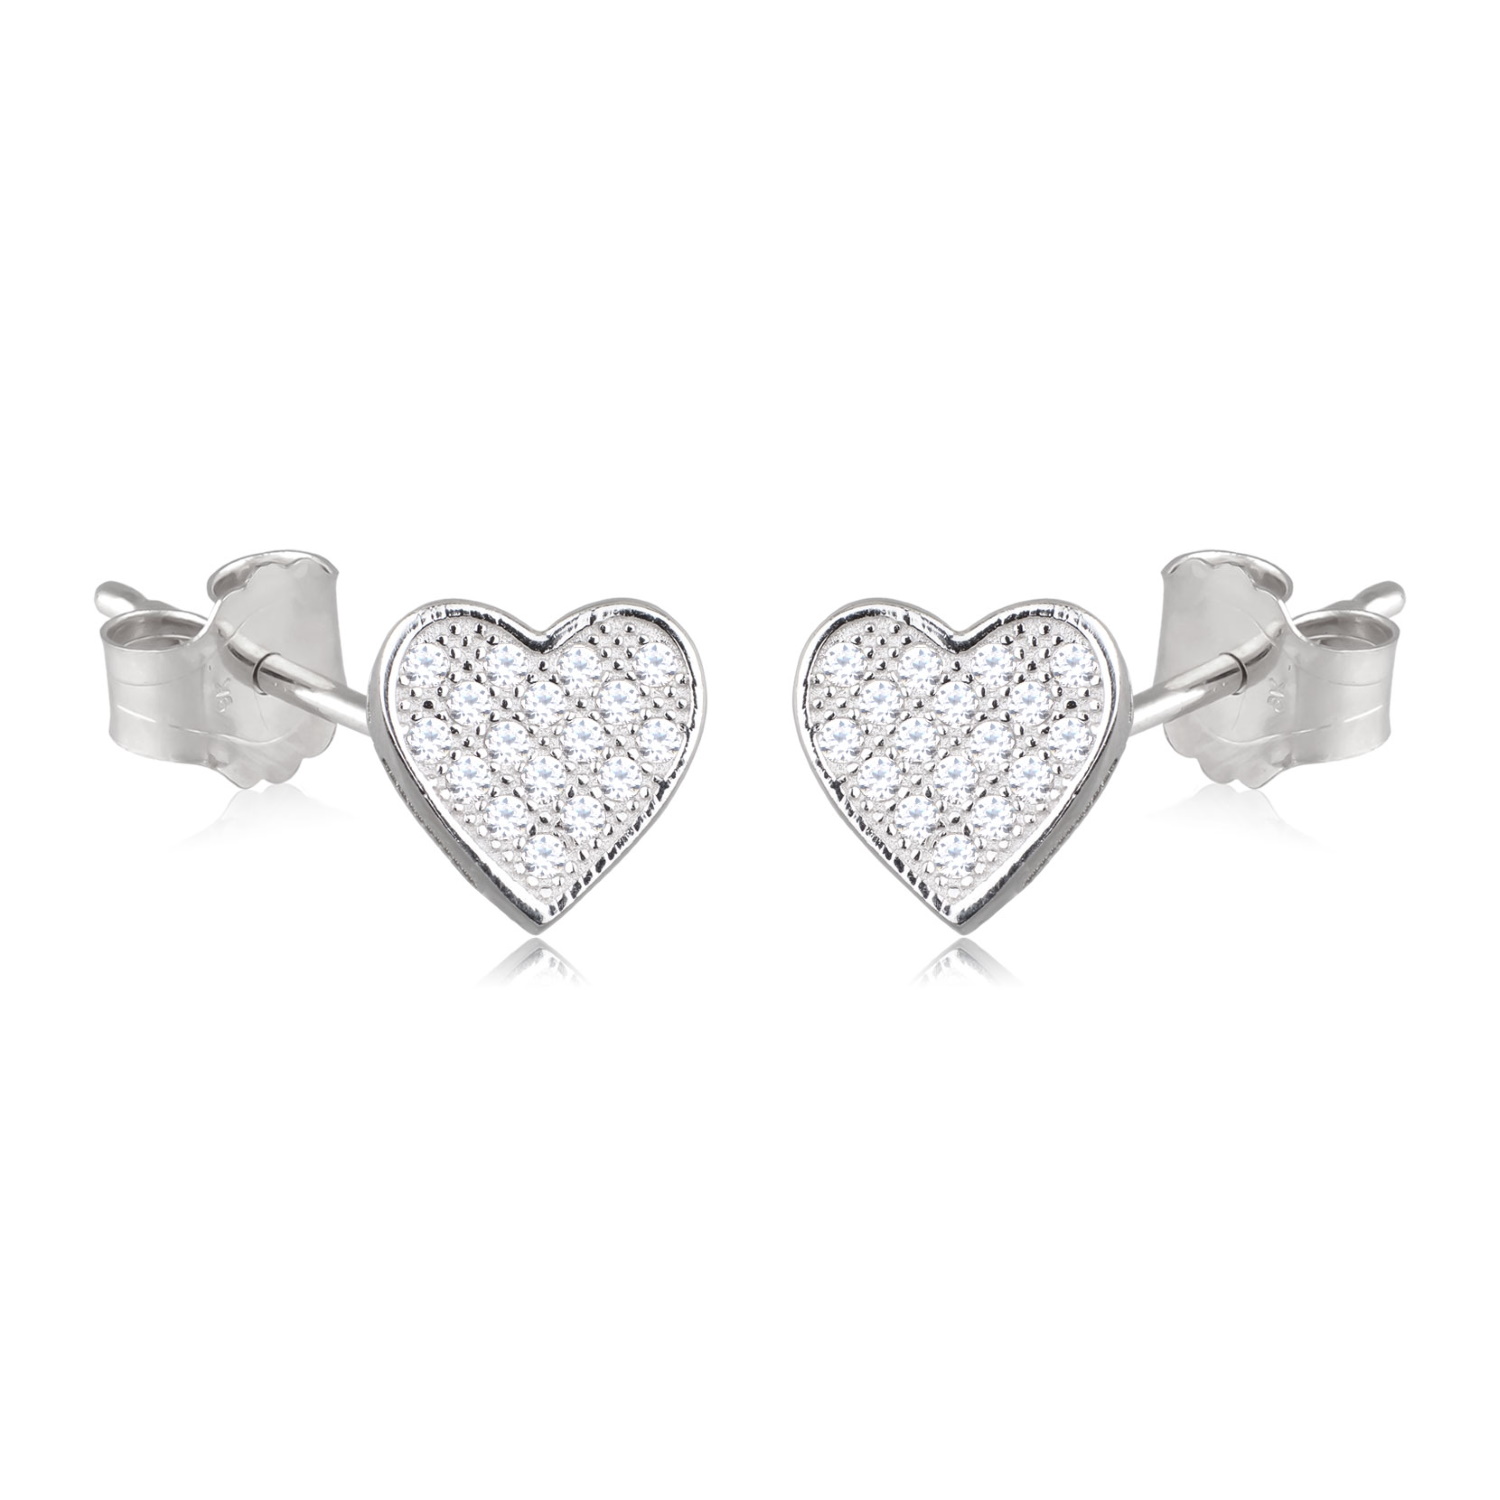 Boucles d'oreilles pendantes en forme de cœur en argent 925/000 rhodié pavées d'oxydes de zirconium blancs. Coeur Pendantes Strass  Adolescent Adulte Amour Femme Fille Indémodable 